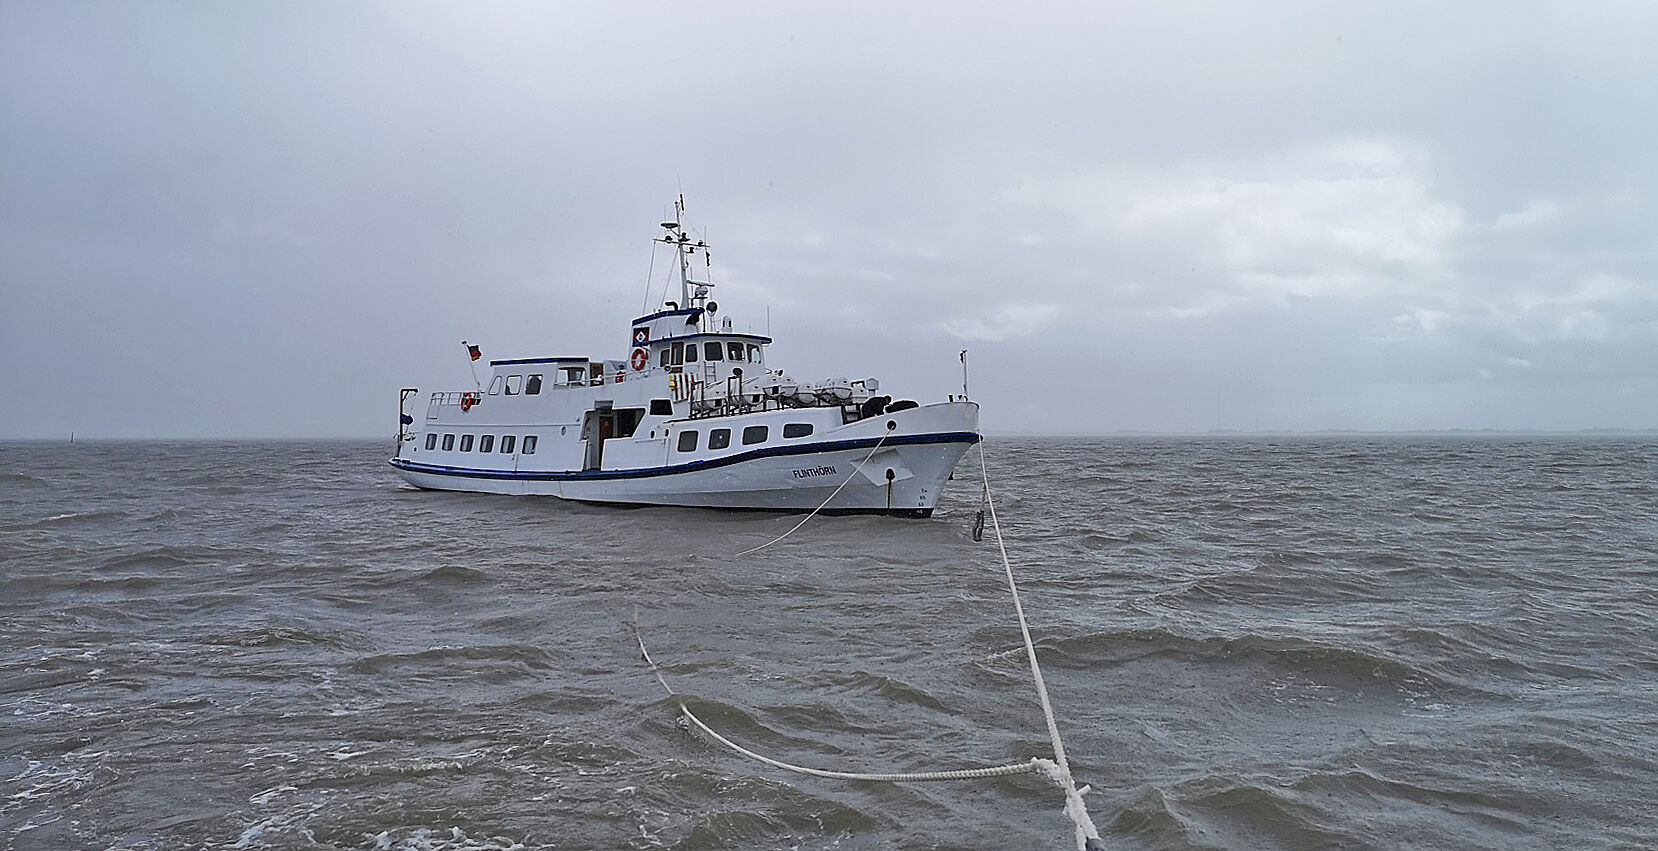 Seenotretter schleppen manövrierunfähiges Fahrgastschiff sicher nach Langeoog